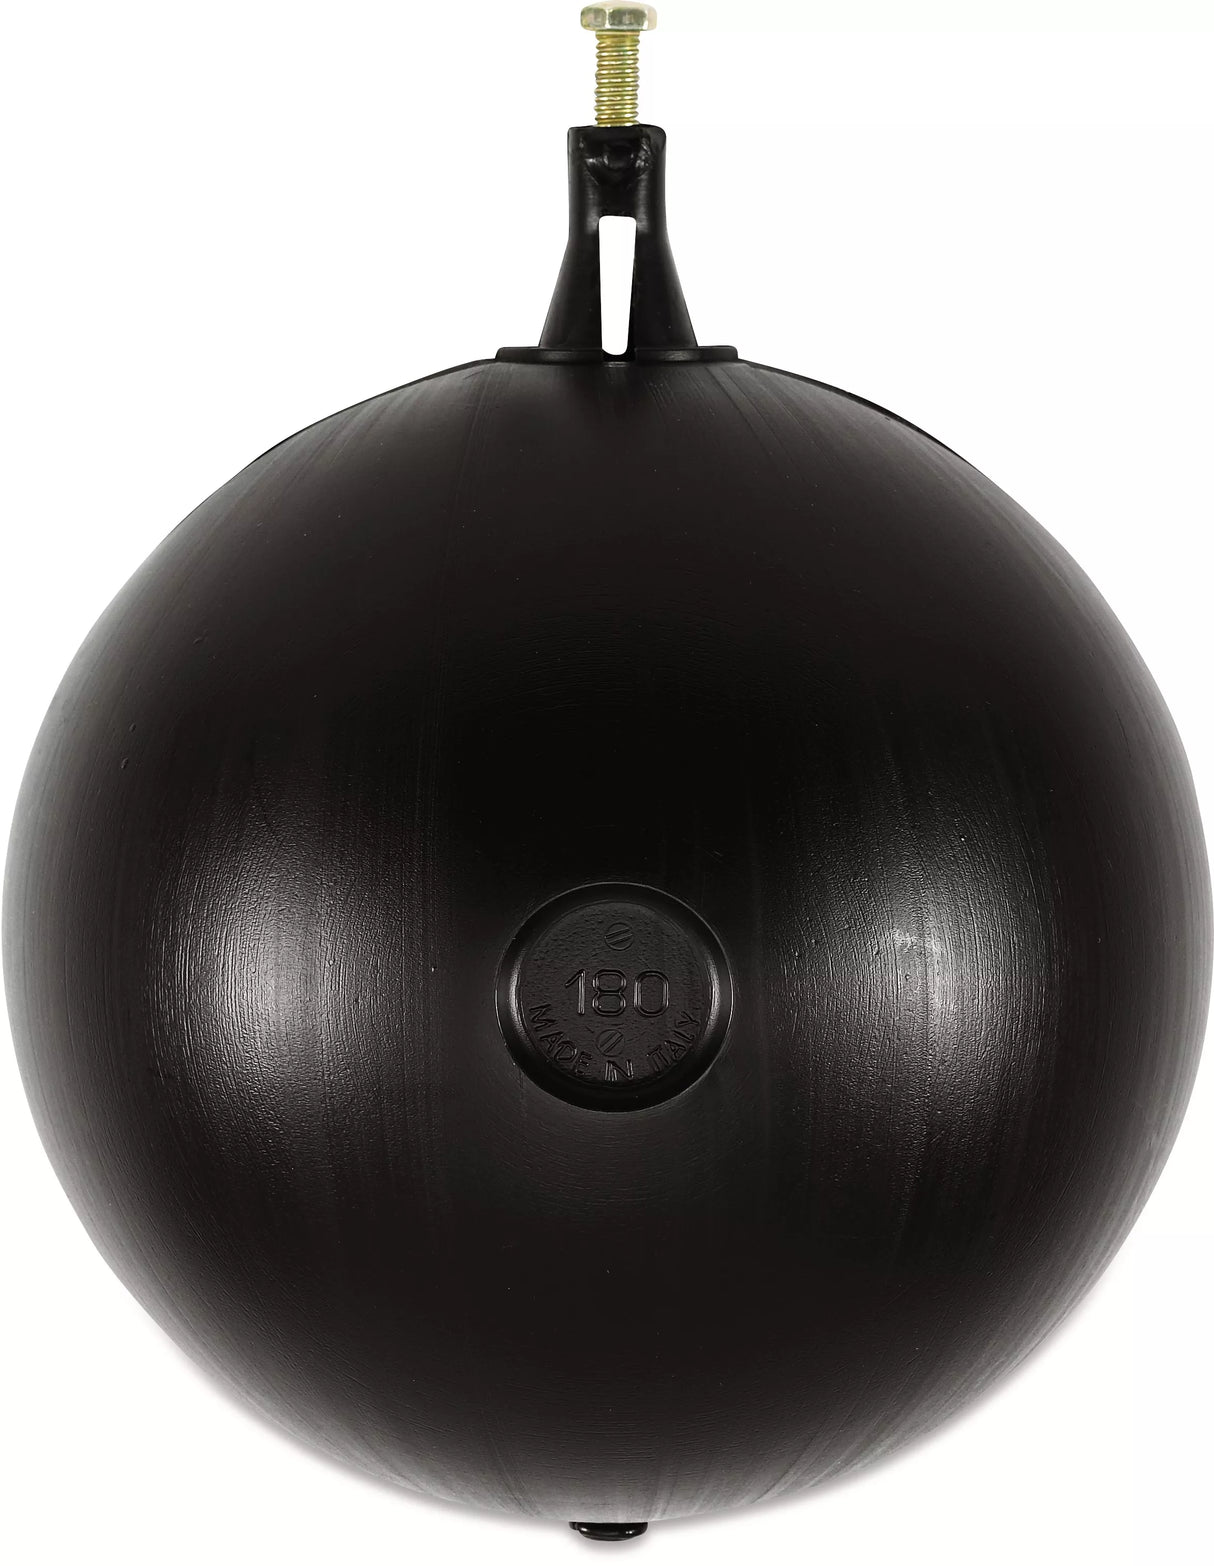 PV Float Ball for Brass Float Operation Valve - 120mm Diameter for ½", ¾" & 1"  Valve